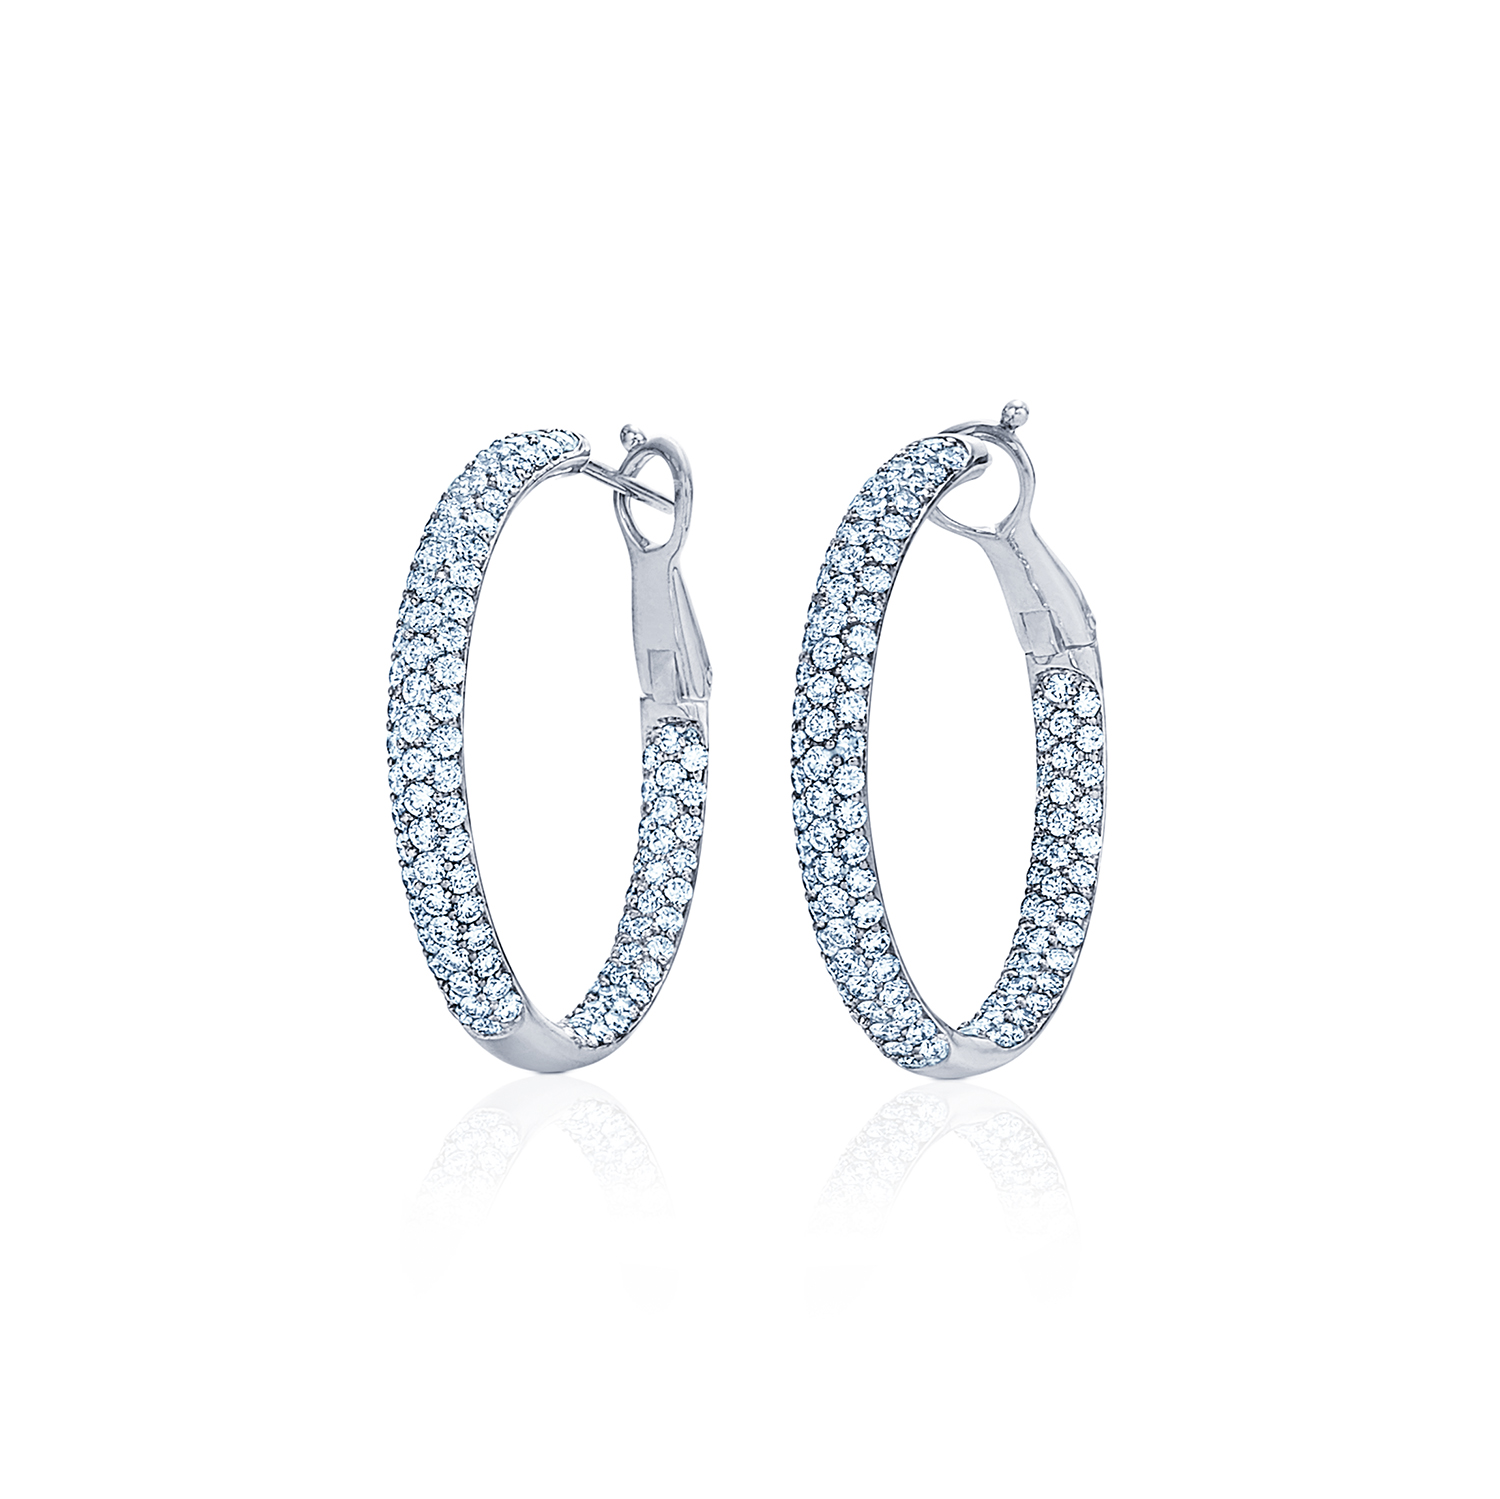 Moonlight Hoop Earrings with Pavé Diamonds in 18K White Gold - Kwiat